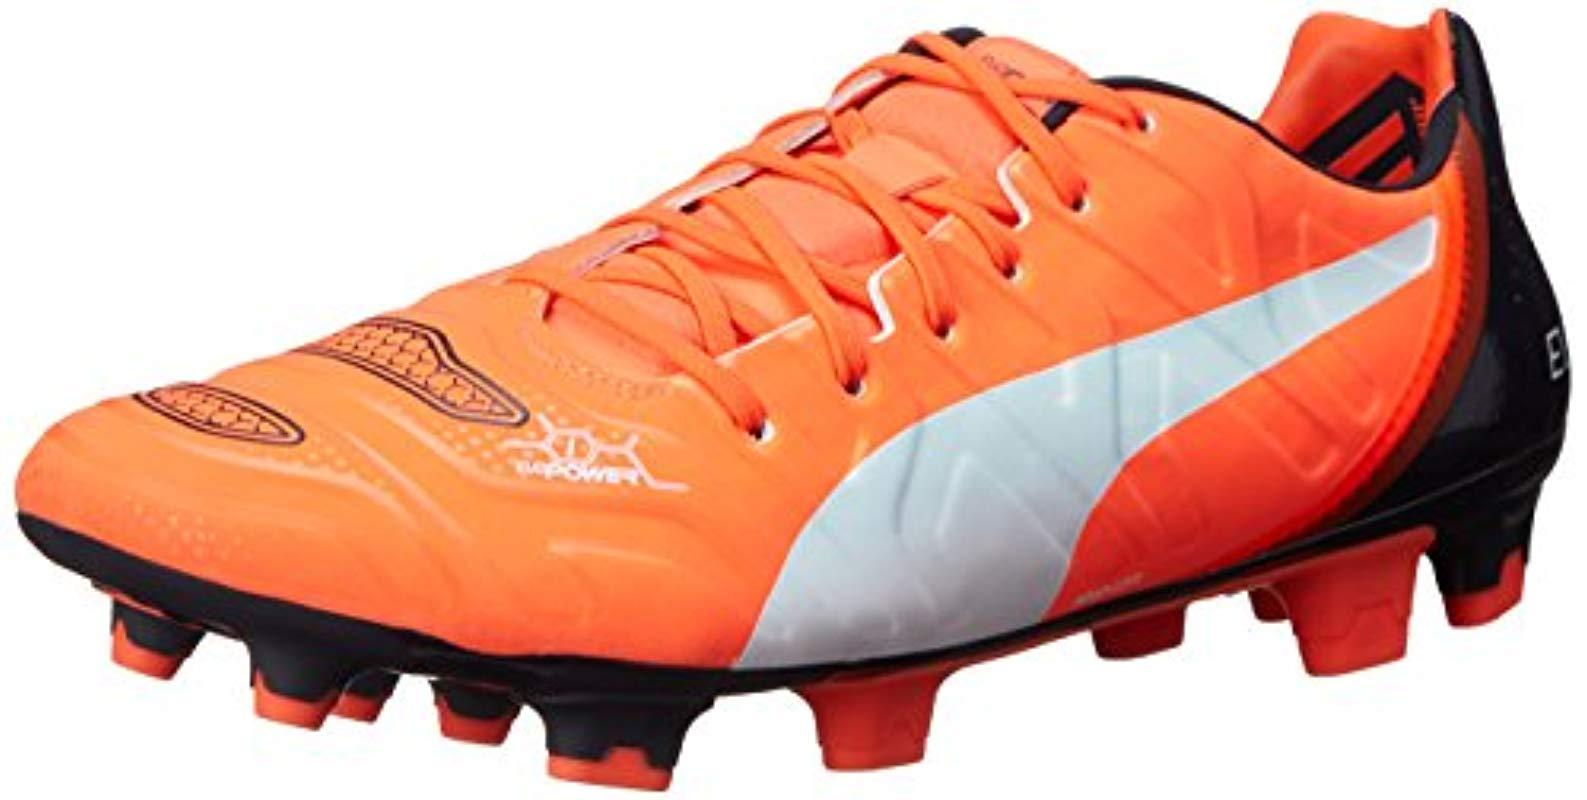 New Puma Evopower 2.2 FG Firm Ground Mens Football Boots Shoes rrp £90 Sale  Football Boots Football Shoes